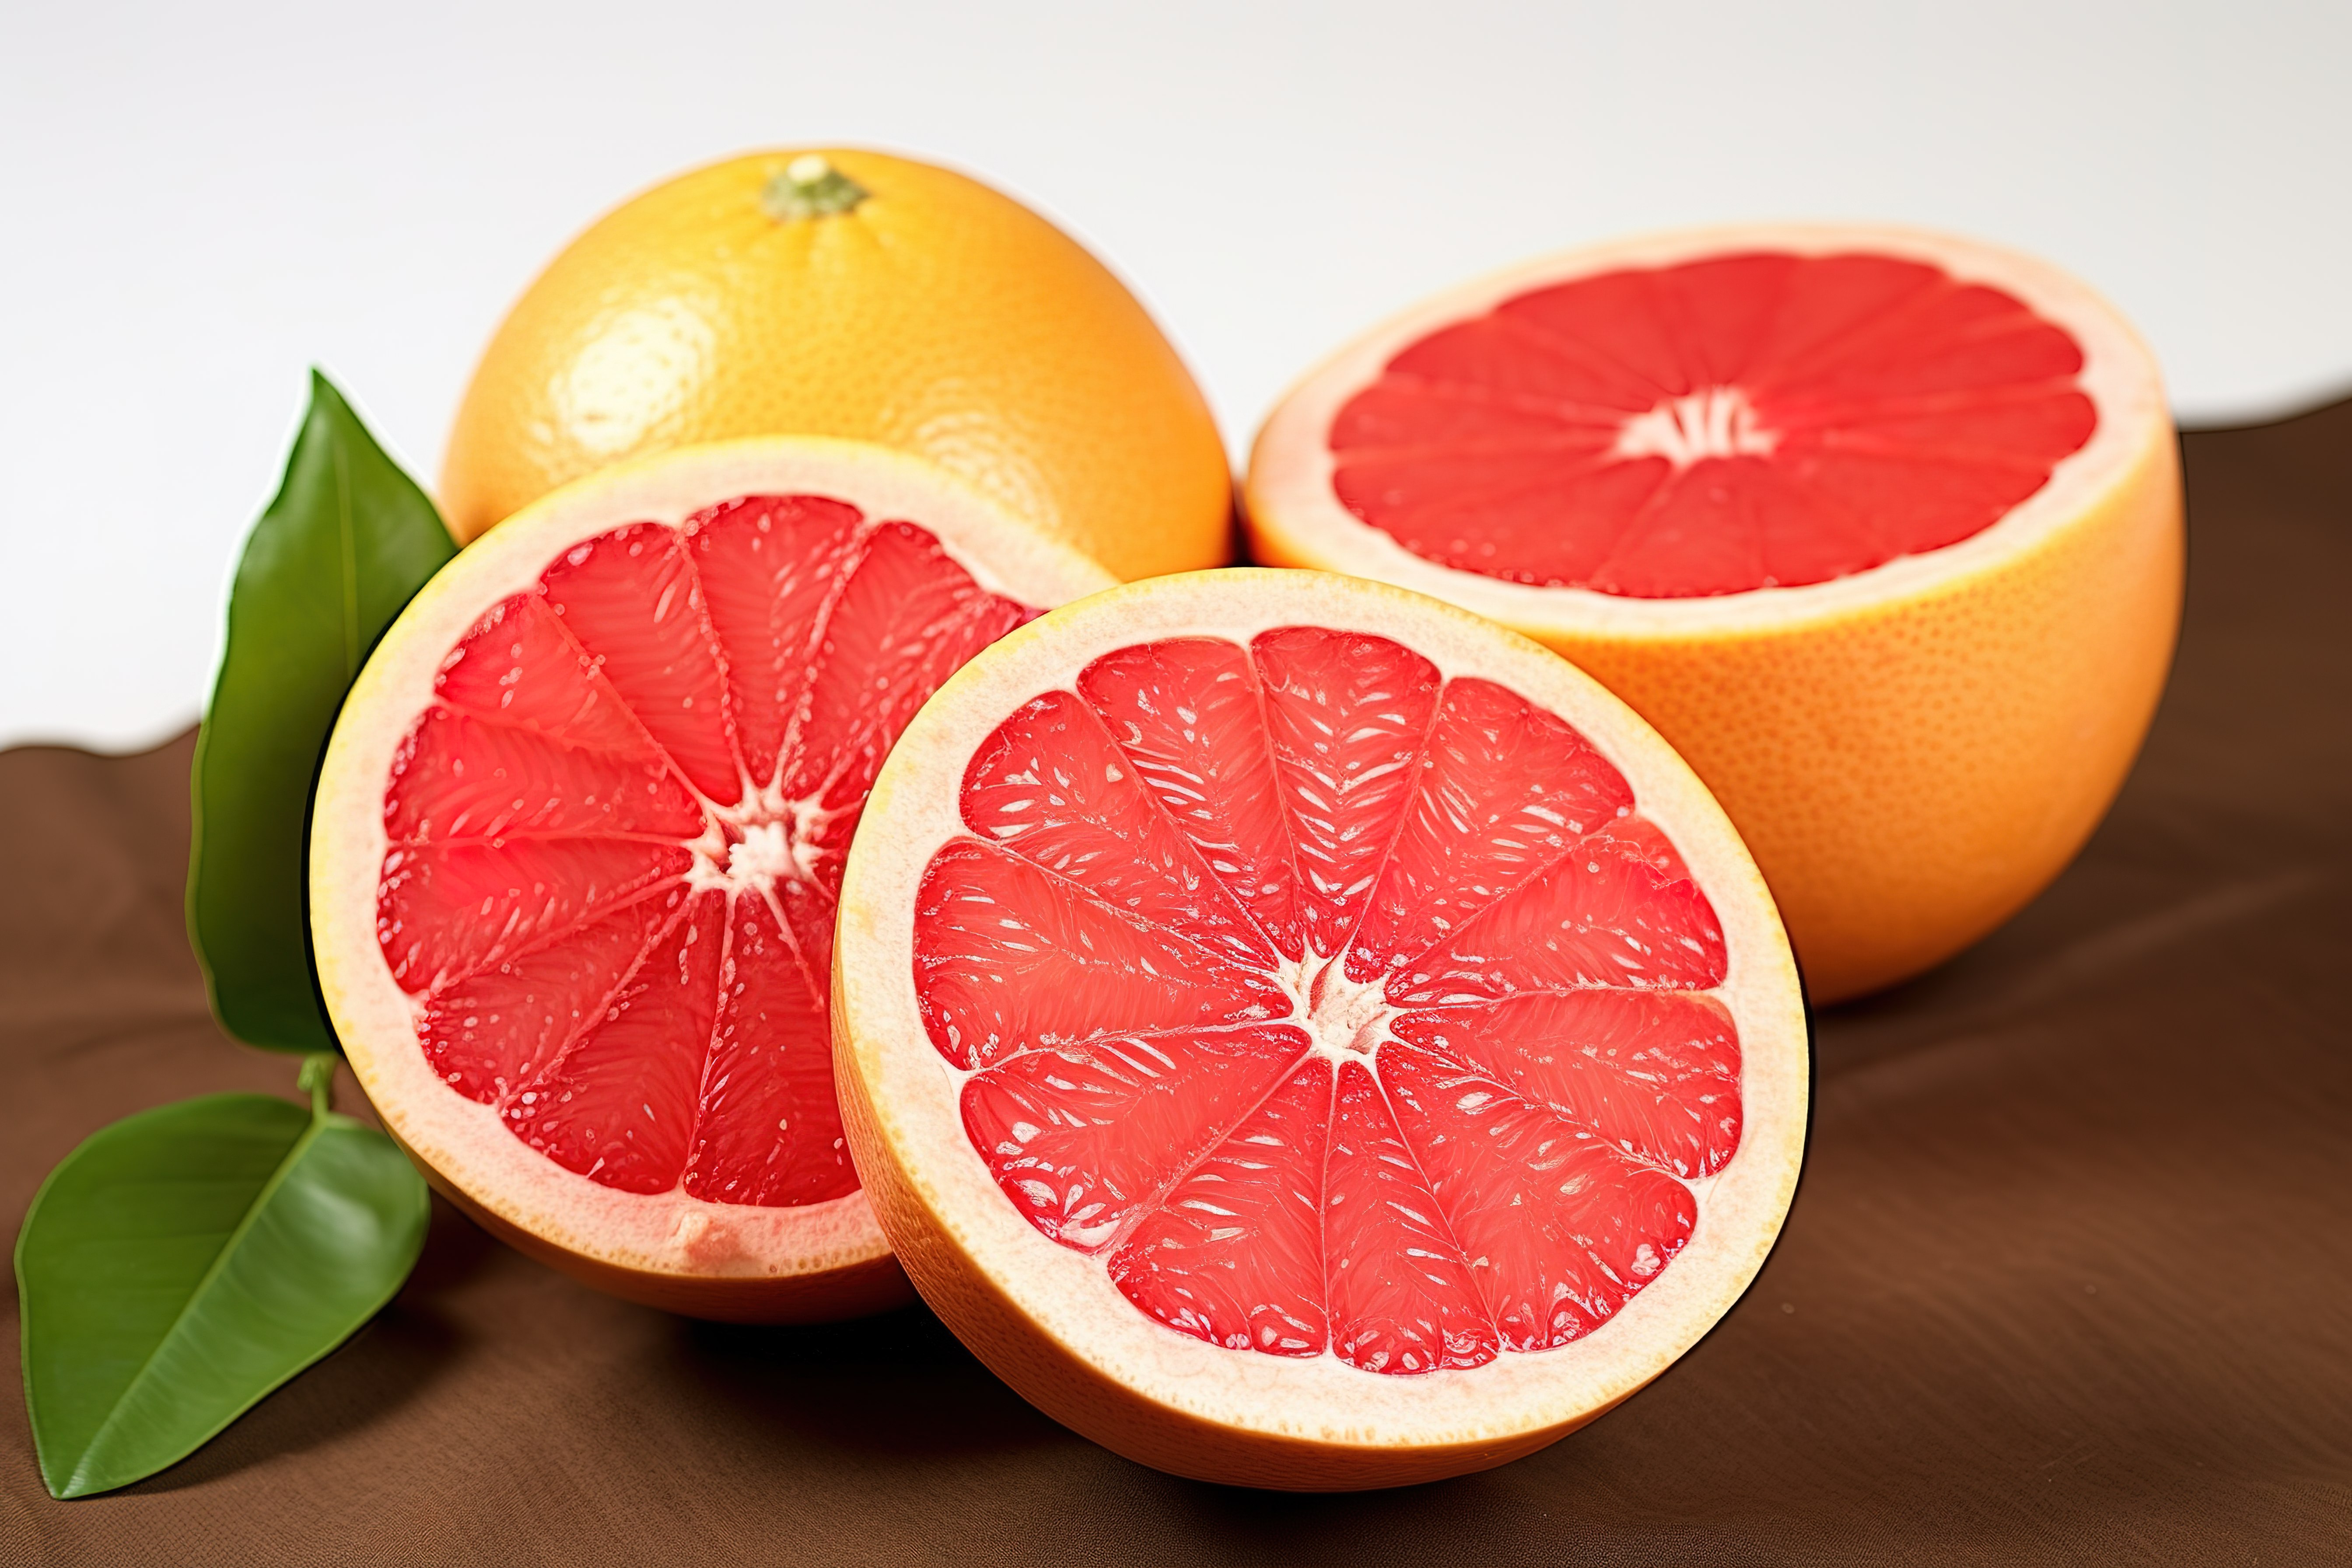 柚子类水果可增强记忆力图片